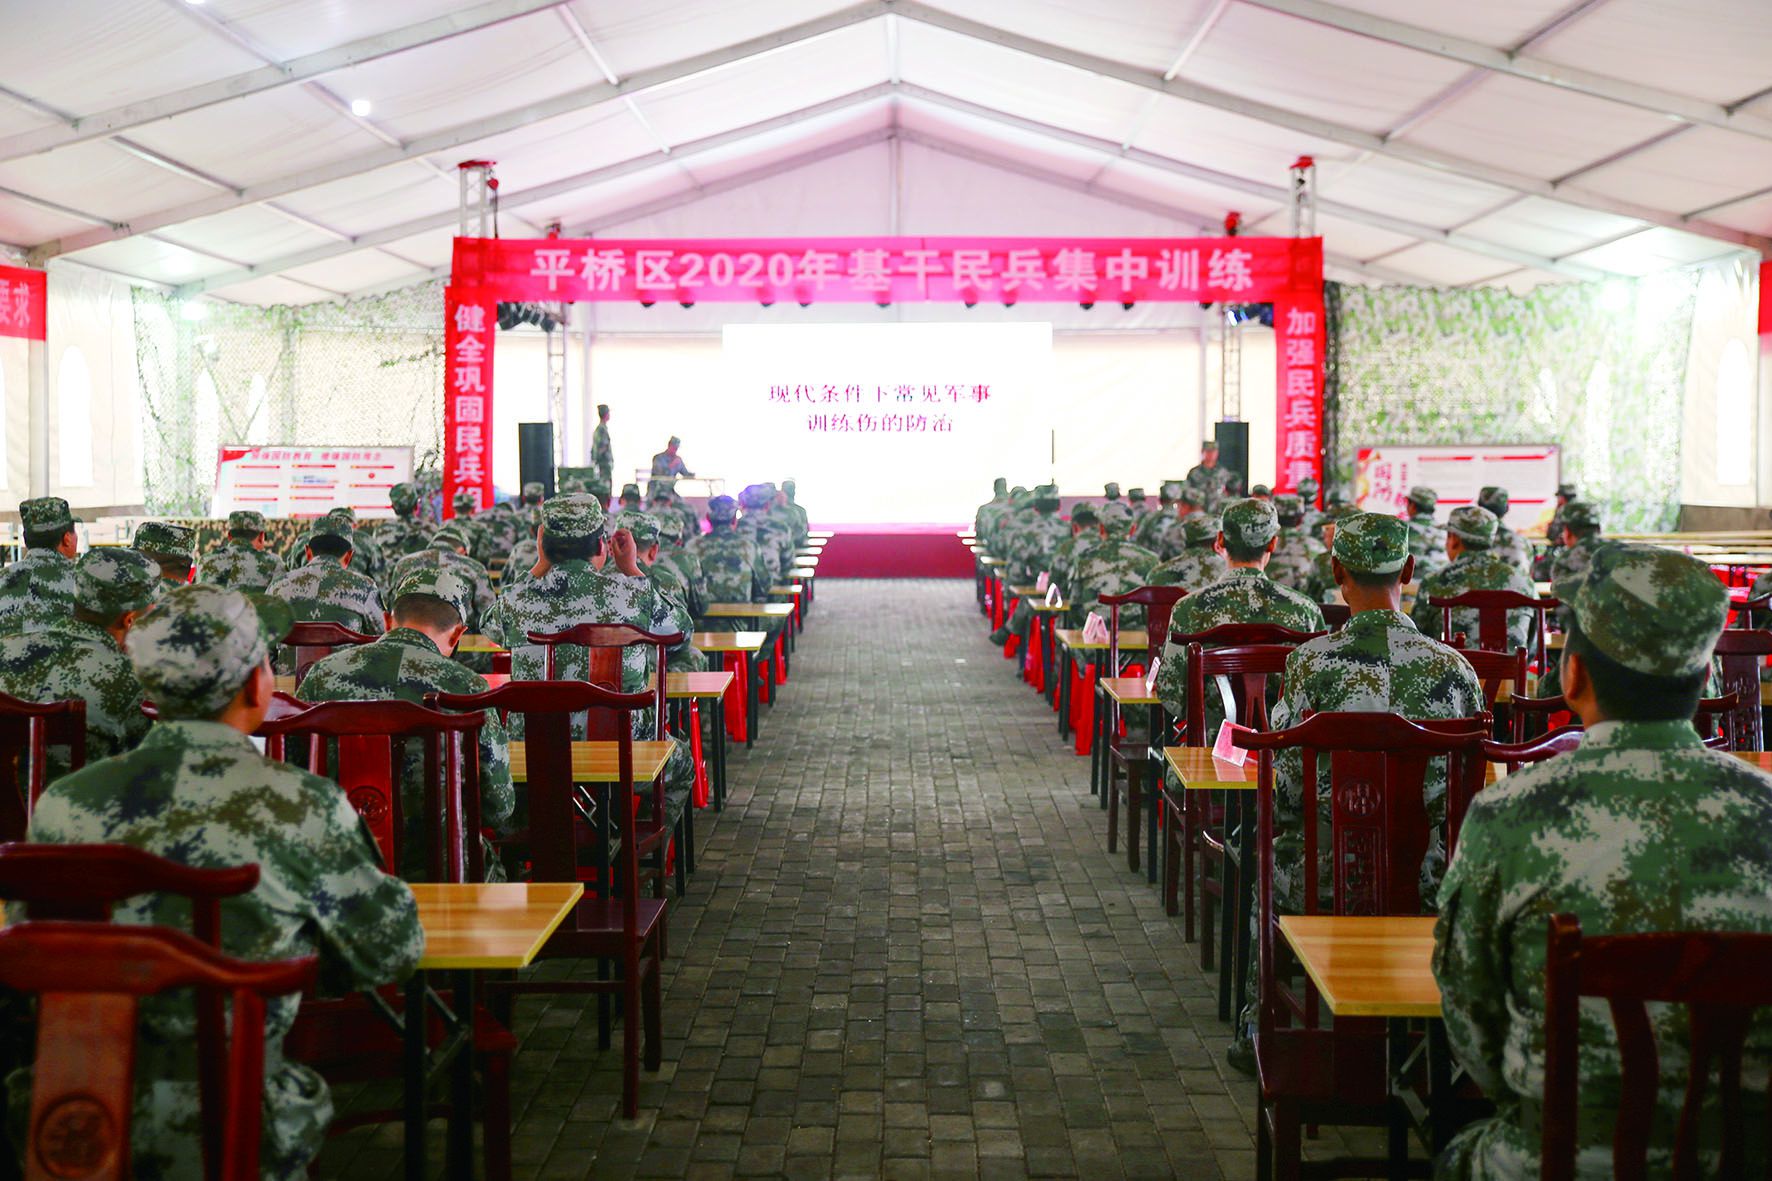 信阳市32乡镇435名基干民兵展开应急集训 时间为期两周